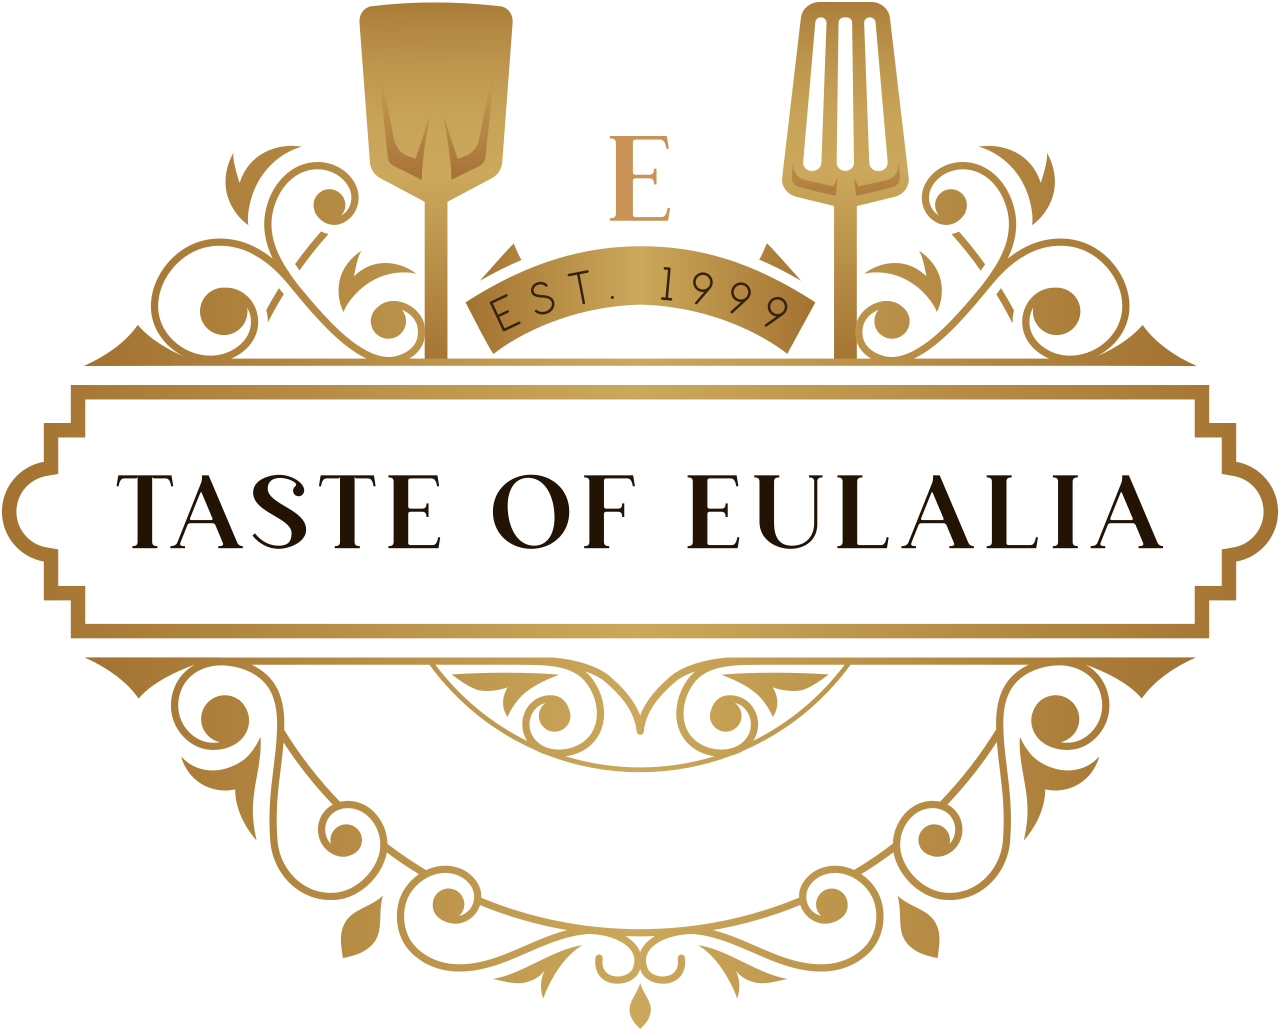 Taste of Eulalia's logo